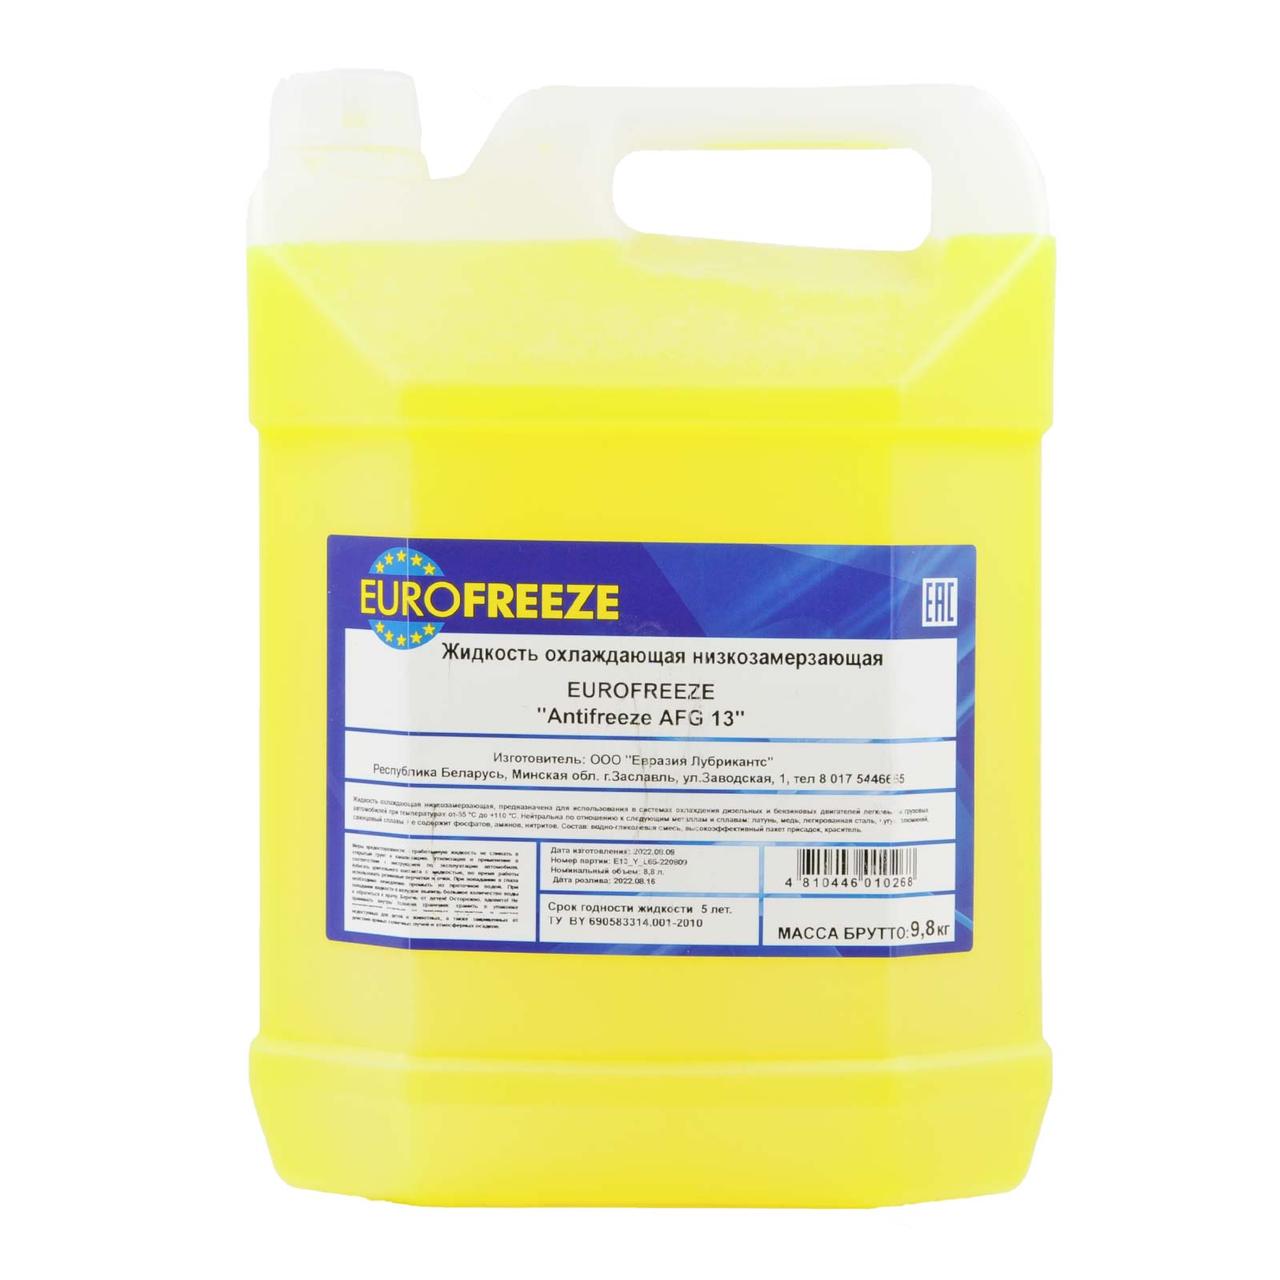 Жидкость охлаждающая низкозамерзающая Antifreeze "Eurofreeze AFG 13" 9,8 кг (8,8 л) желтый